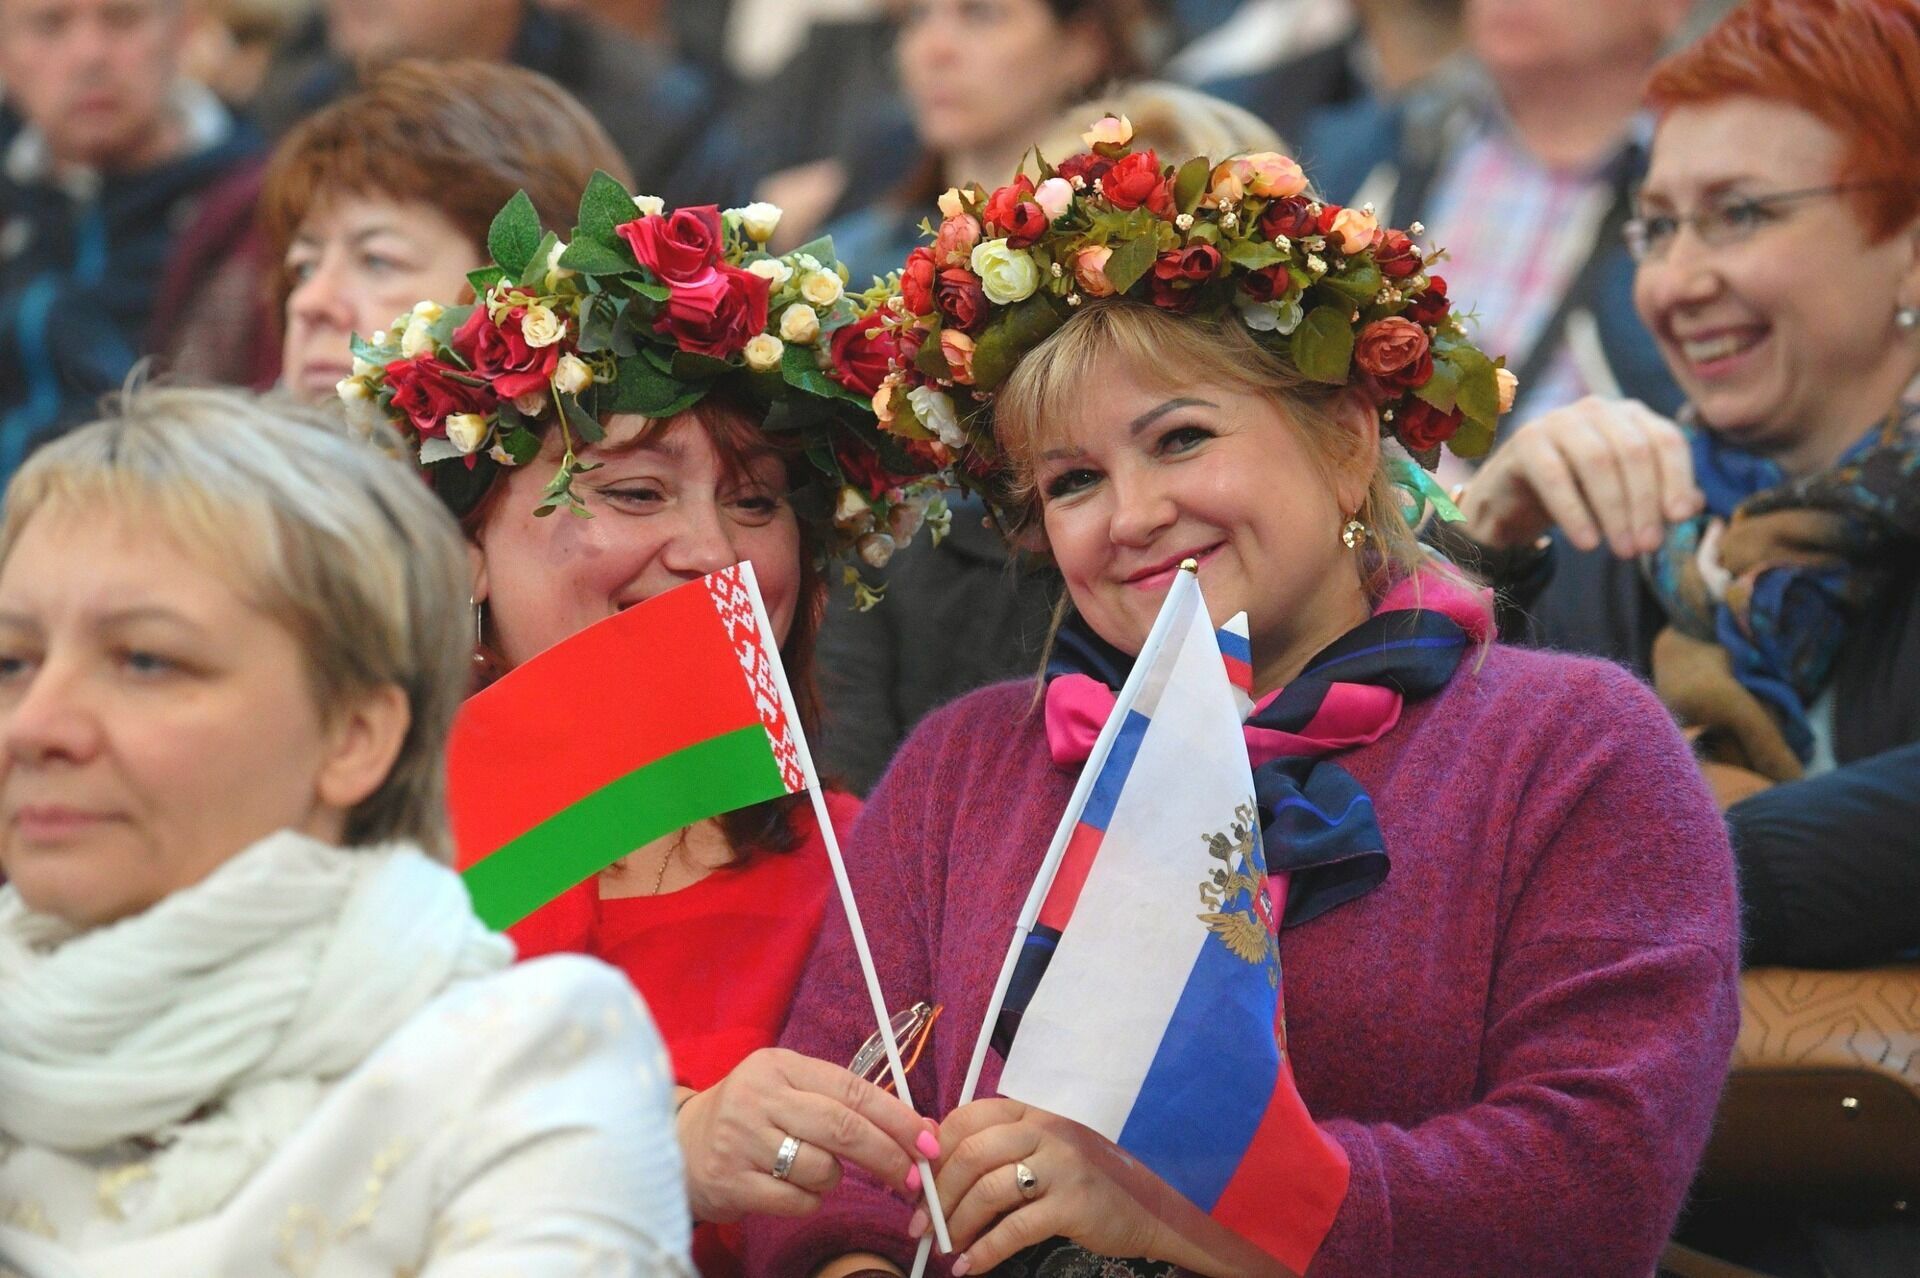 Синхронны во всем: Белоруссия и Россия очень похожи и различаются лишь размерами